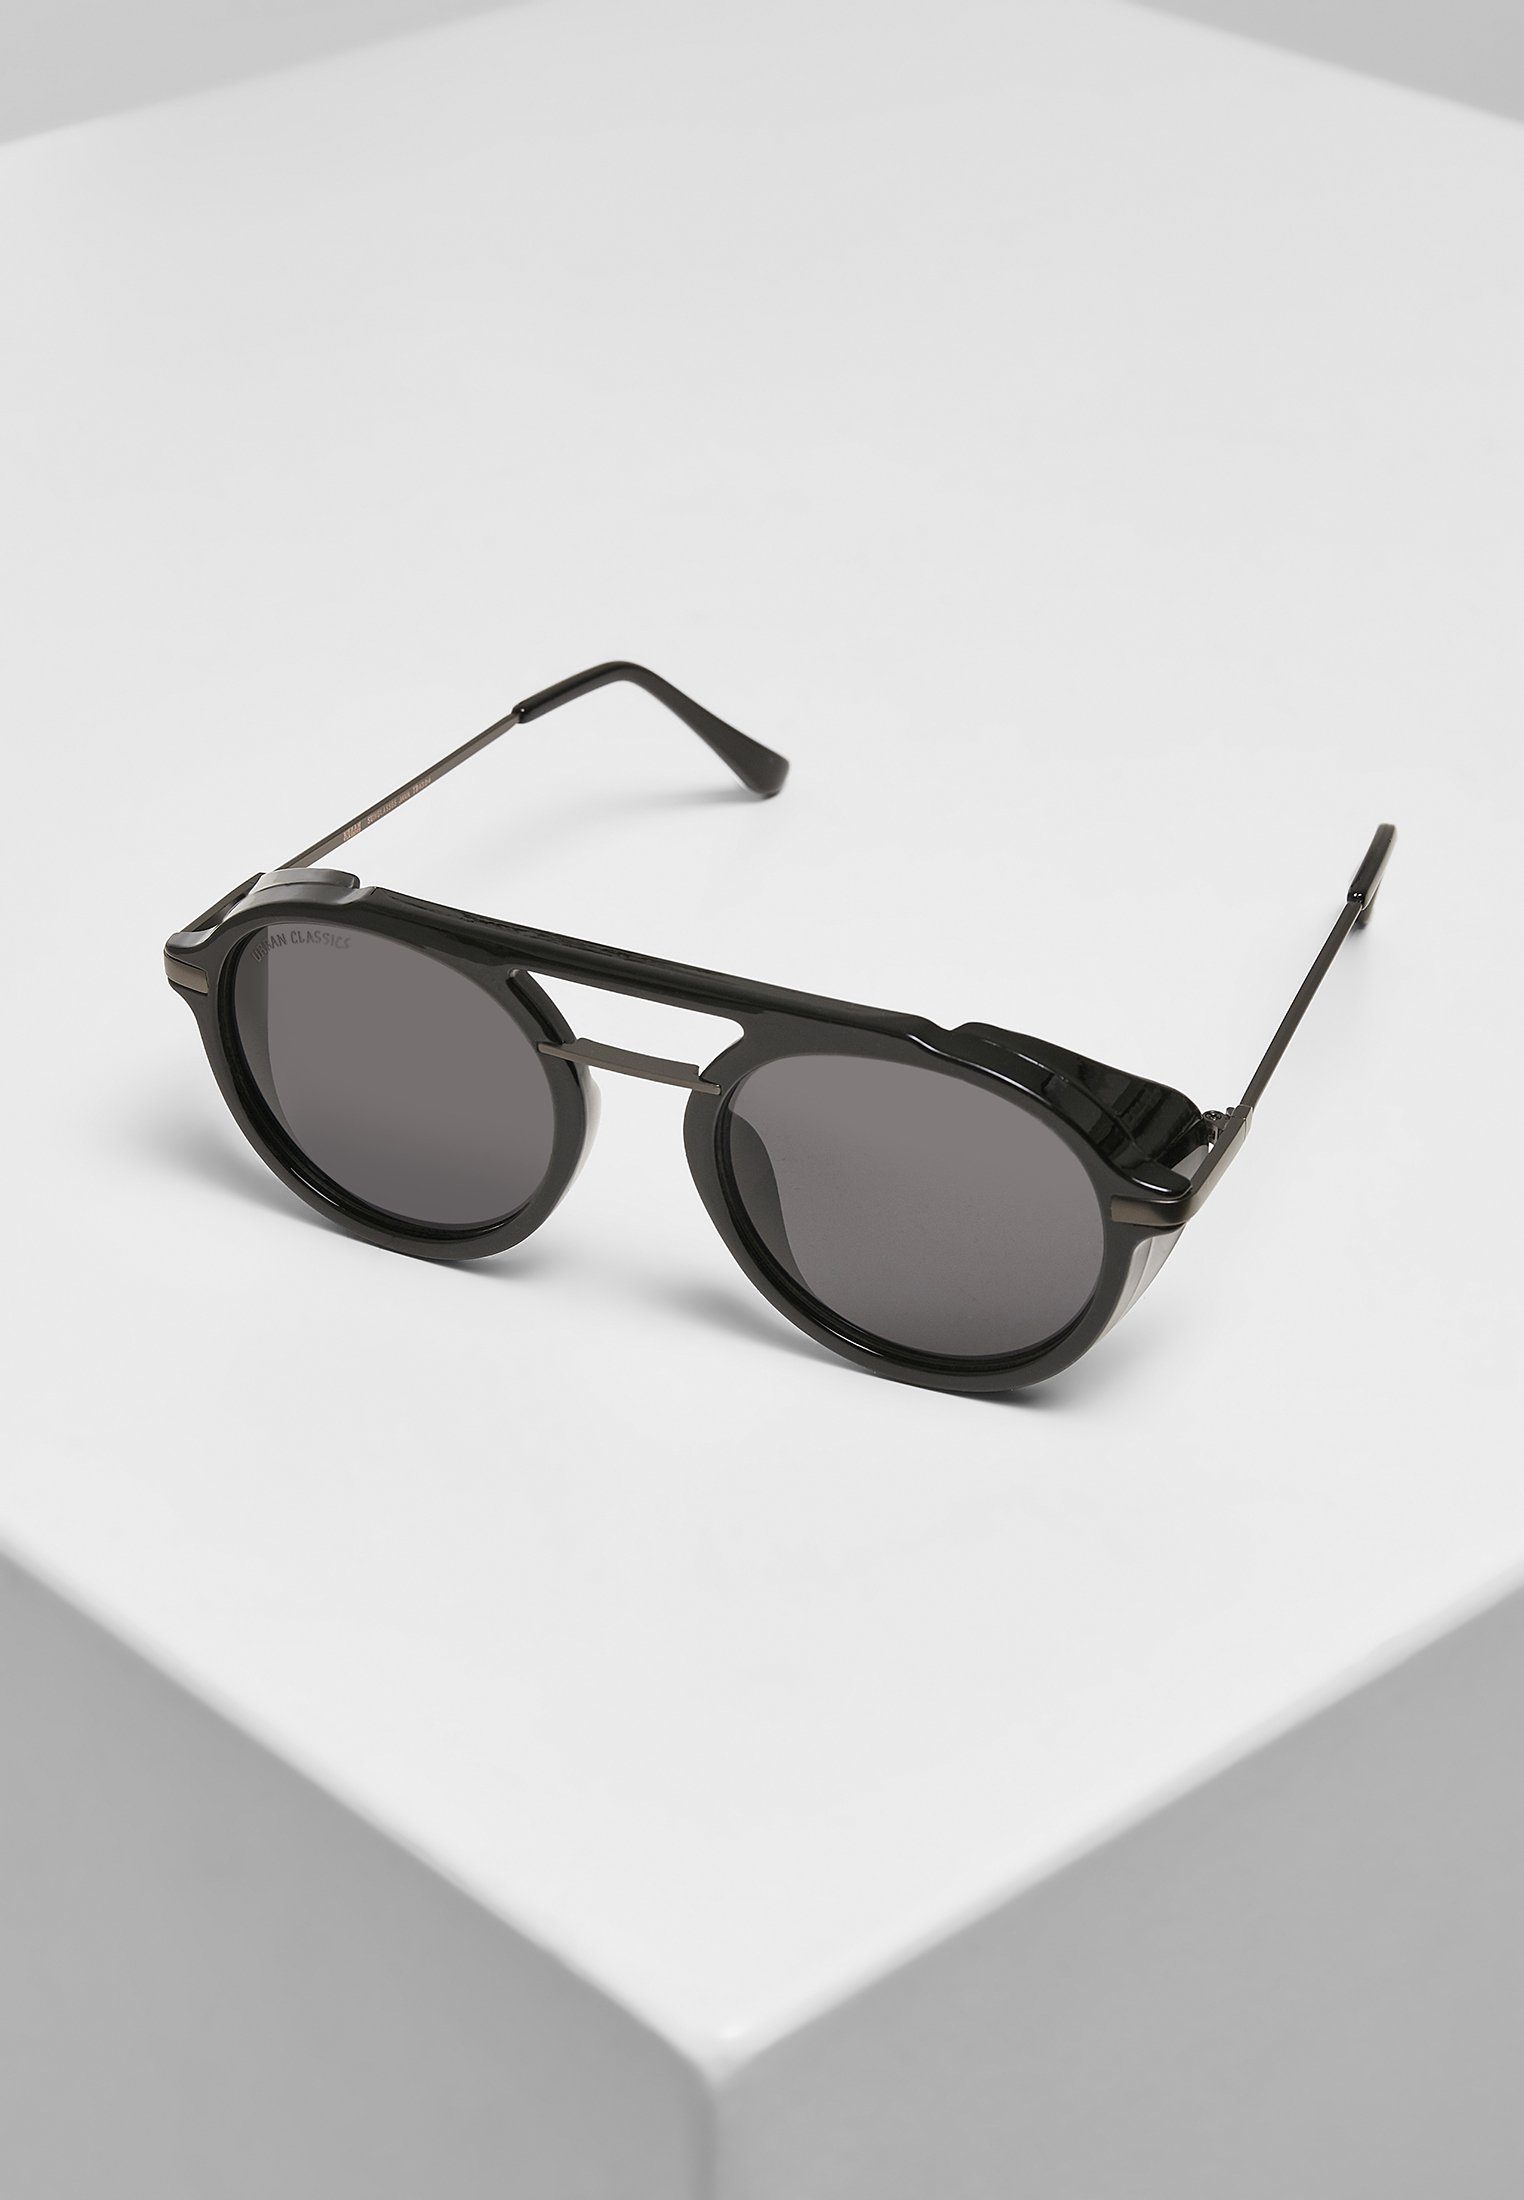 URBAN CLASSICS Sunglasses Java Sonnenbrille Unisex